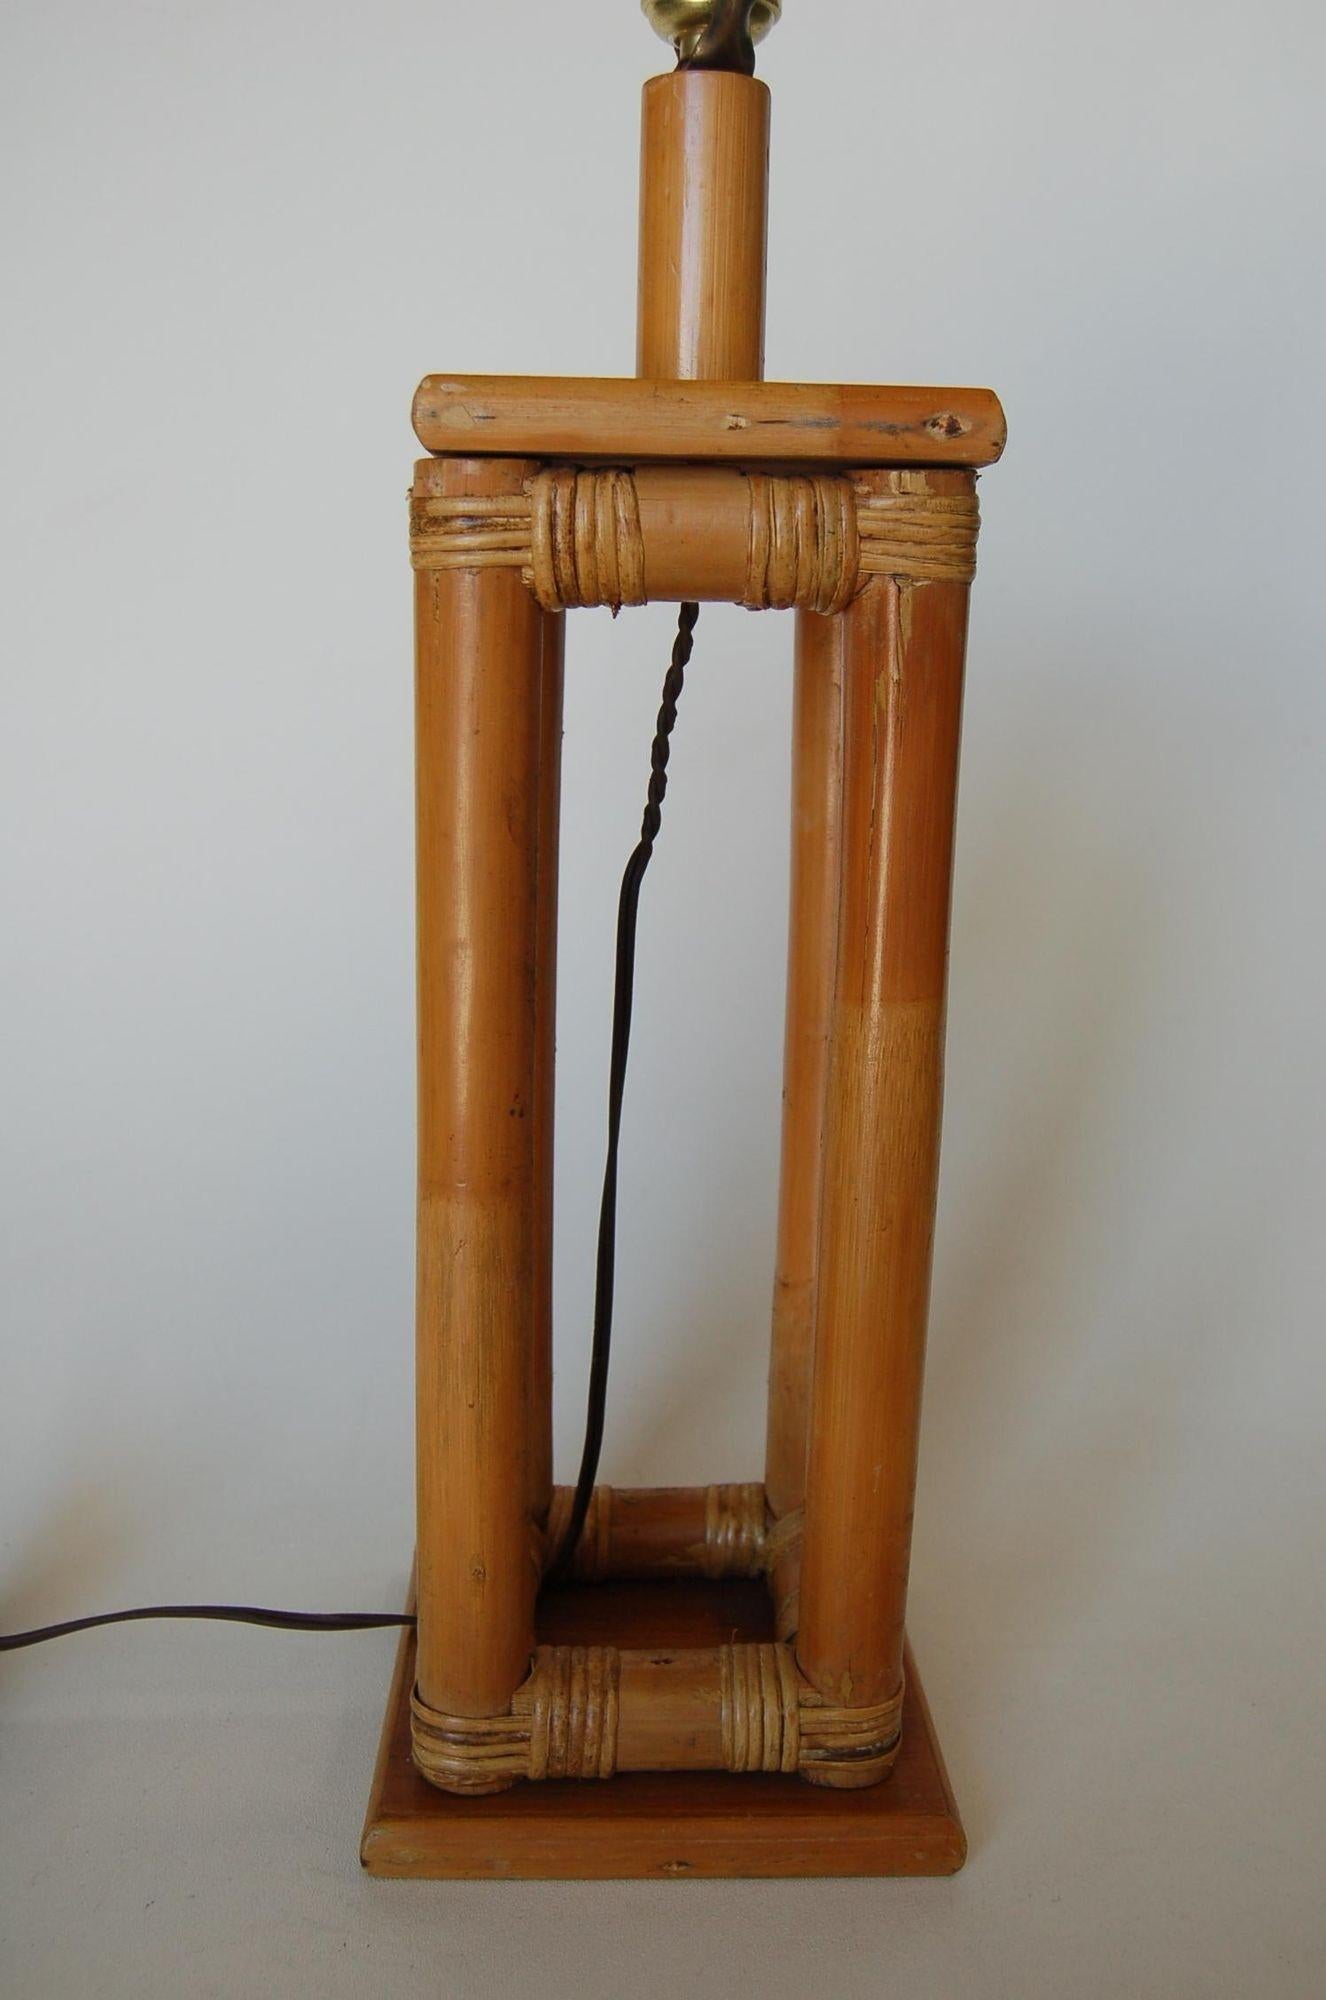 Lampe de table en rotin pao du milieu du siècle restaurée en forme de boîte fixée à une base carrée en bois

1950, États-Unis

Mesures : 6,5